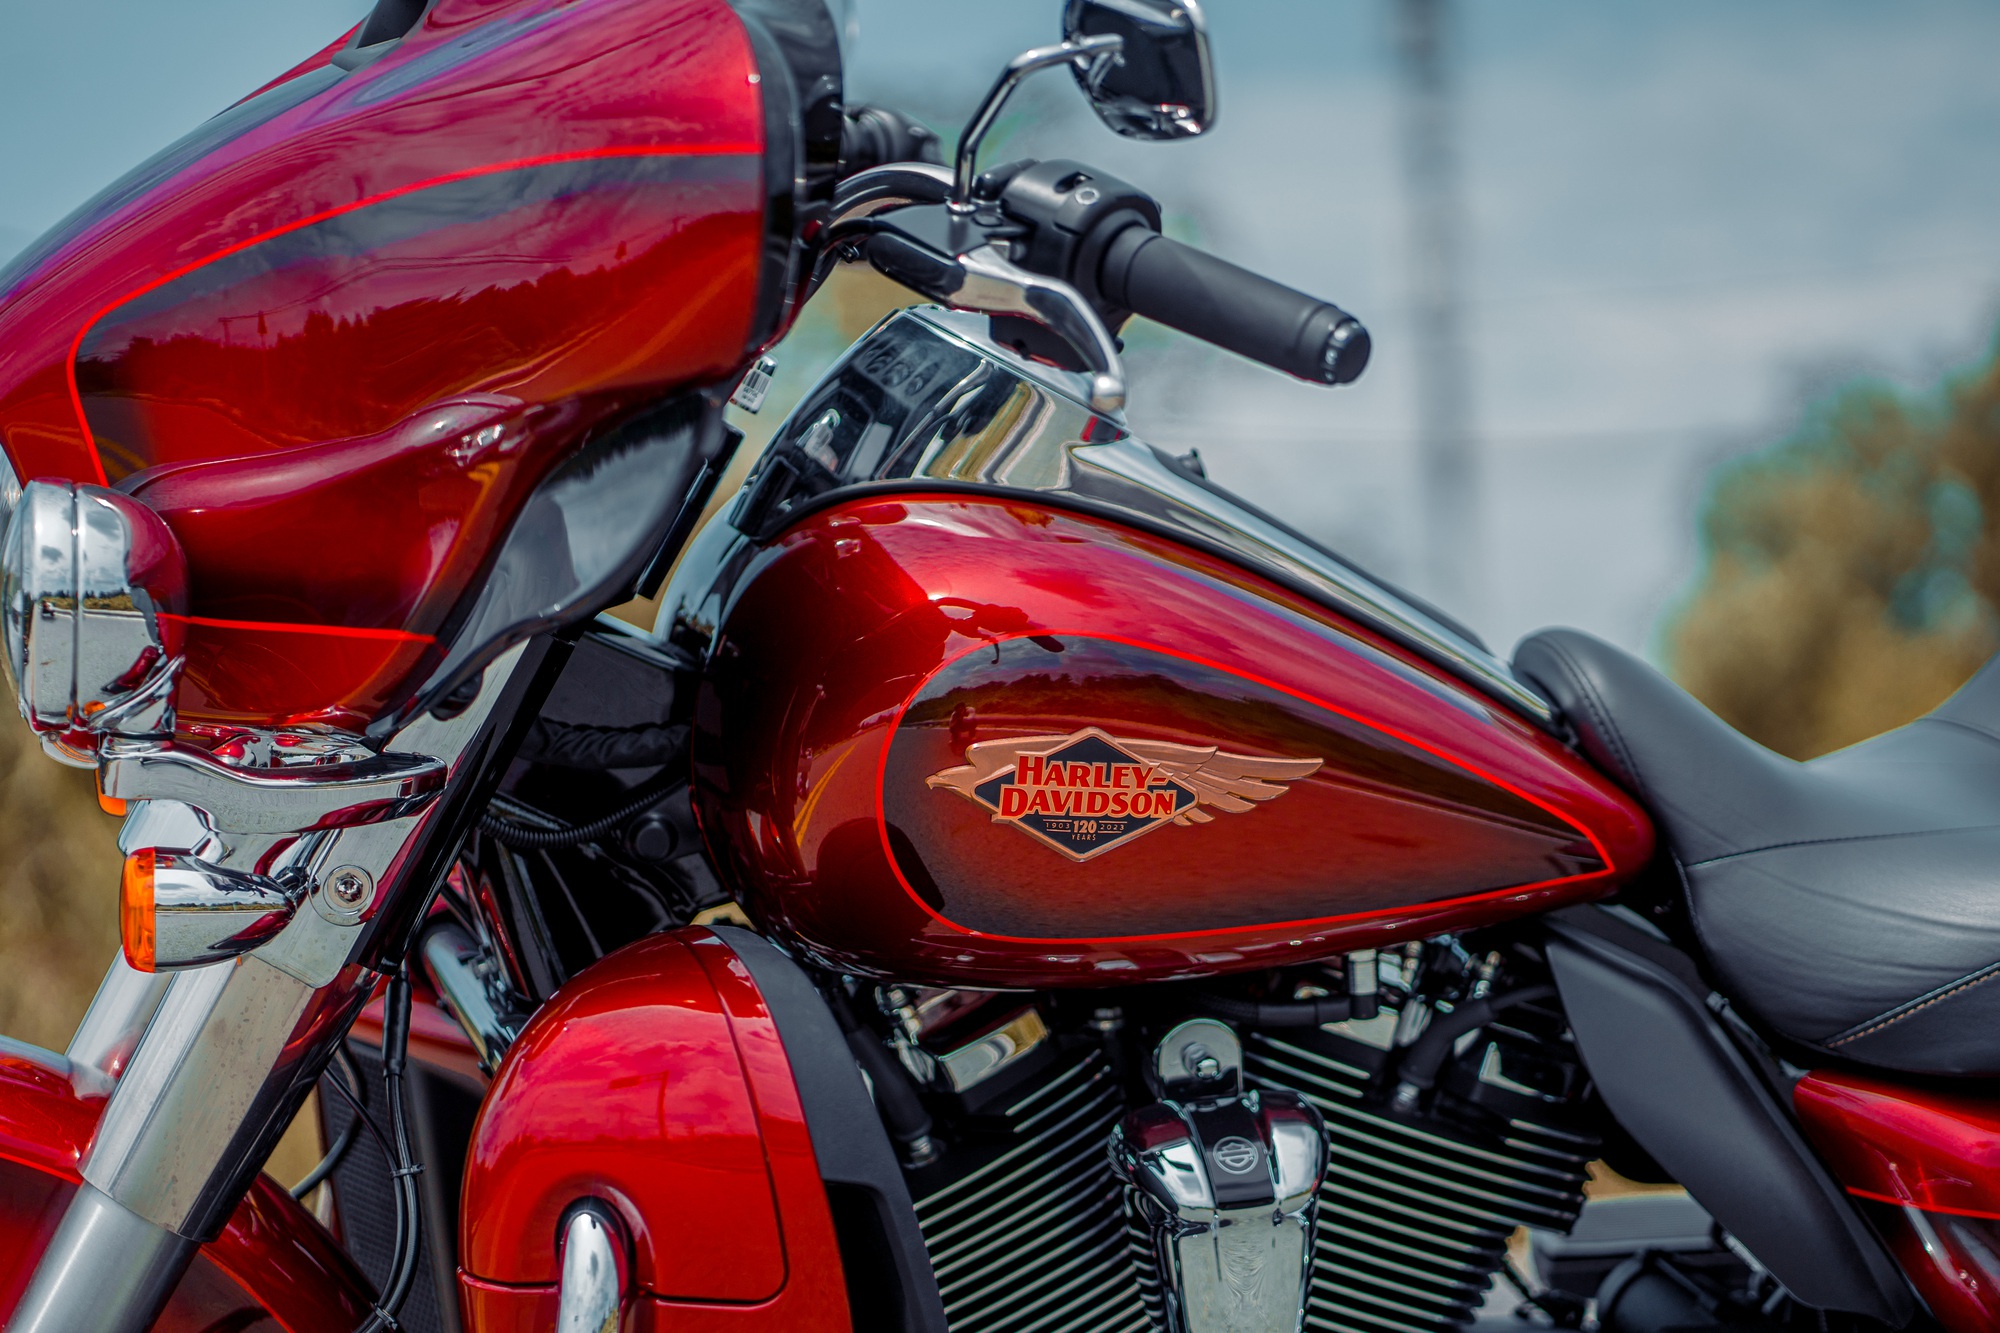 Harley-Davidson Ultra Limited bản đặc biệt giá 1,7 tỉ đồng, chỉ có 2 chiếc tại Việt Nam - Ảnh 6.